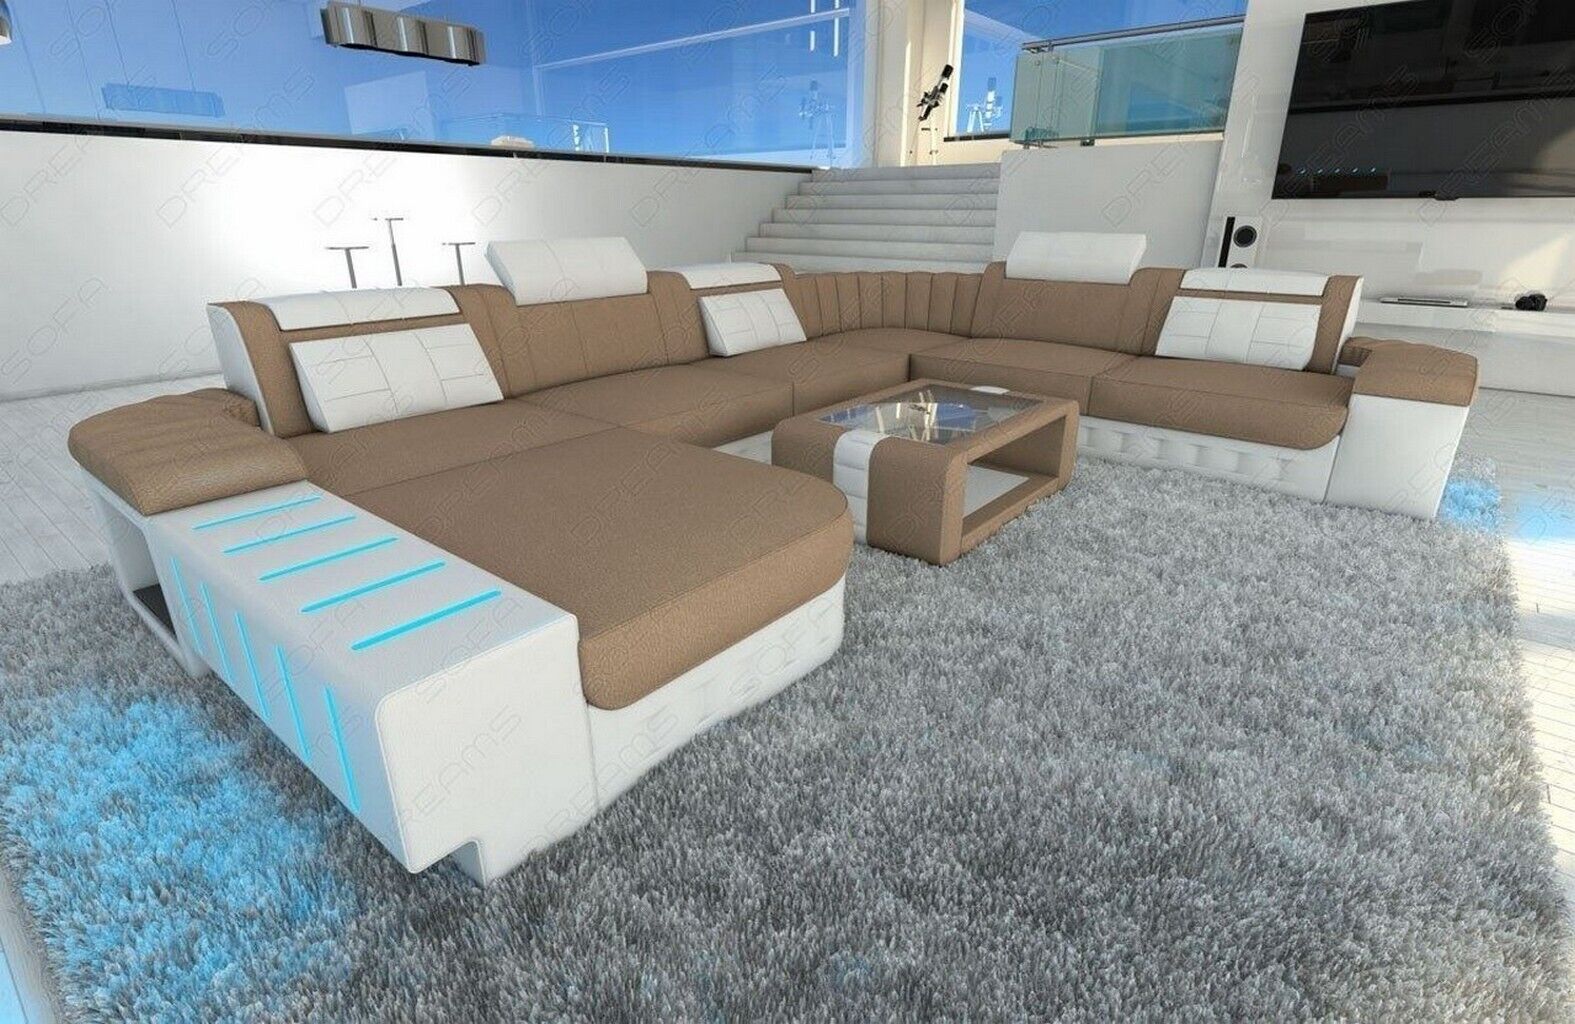 Sofa Wohnlandschaft modern BELLAGIO XXL Design Couch braun mega Polsterecke LED